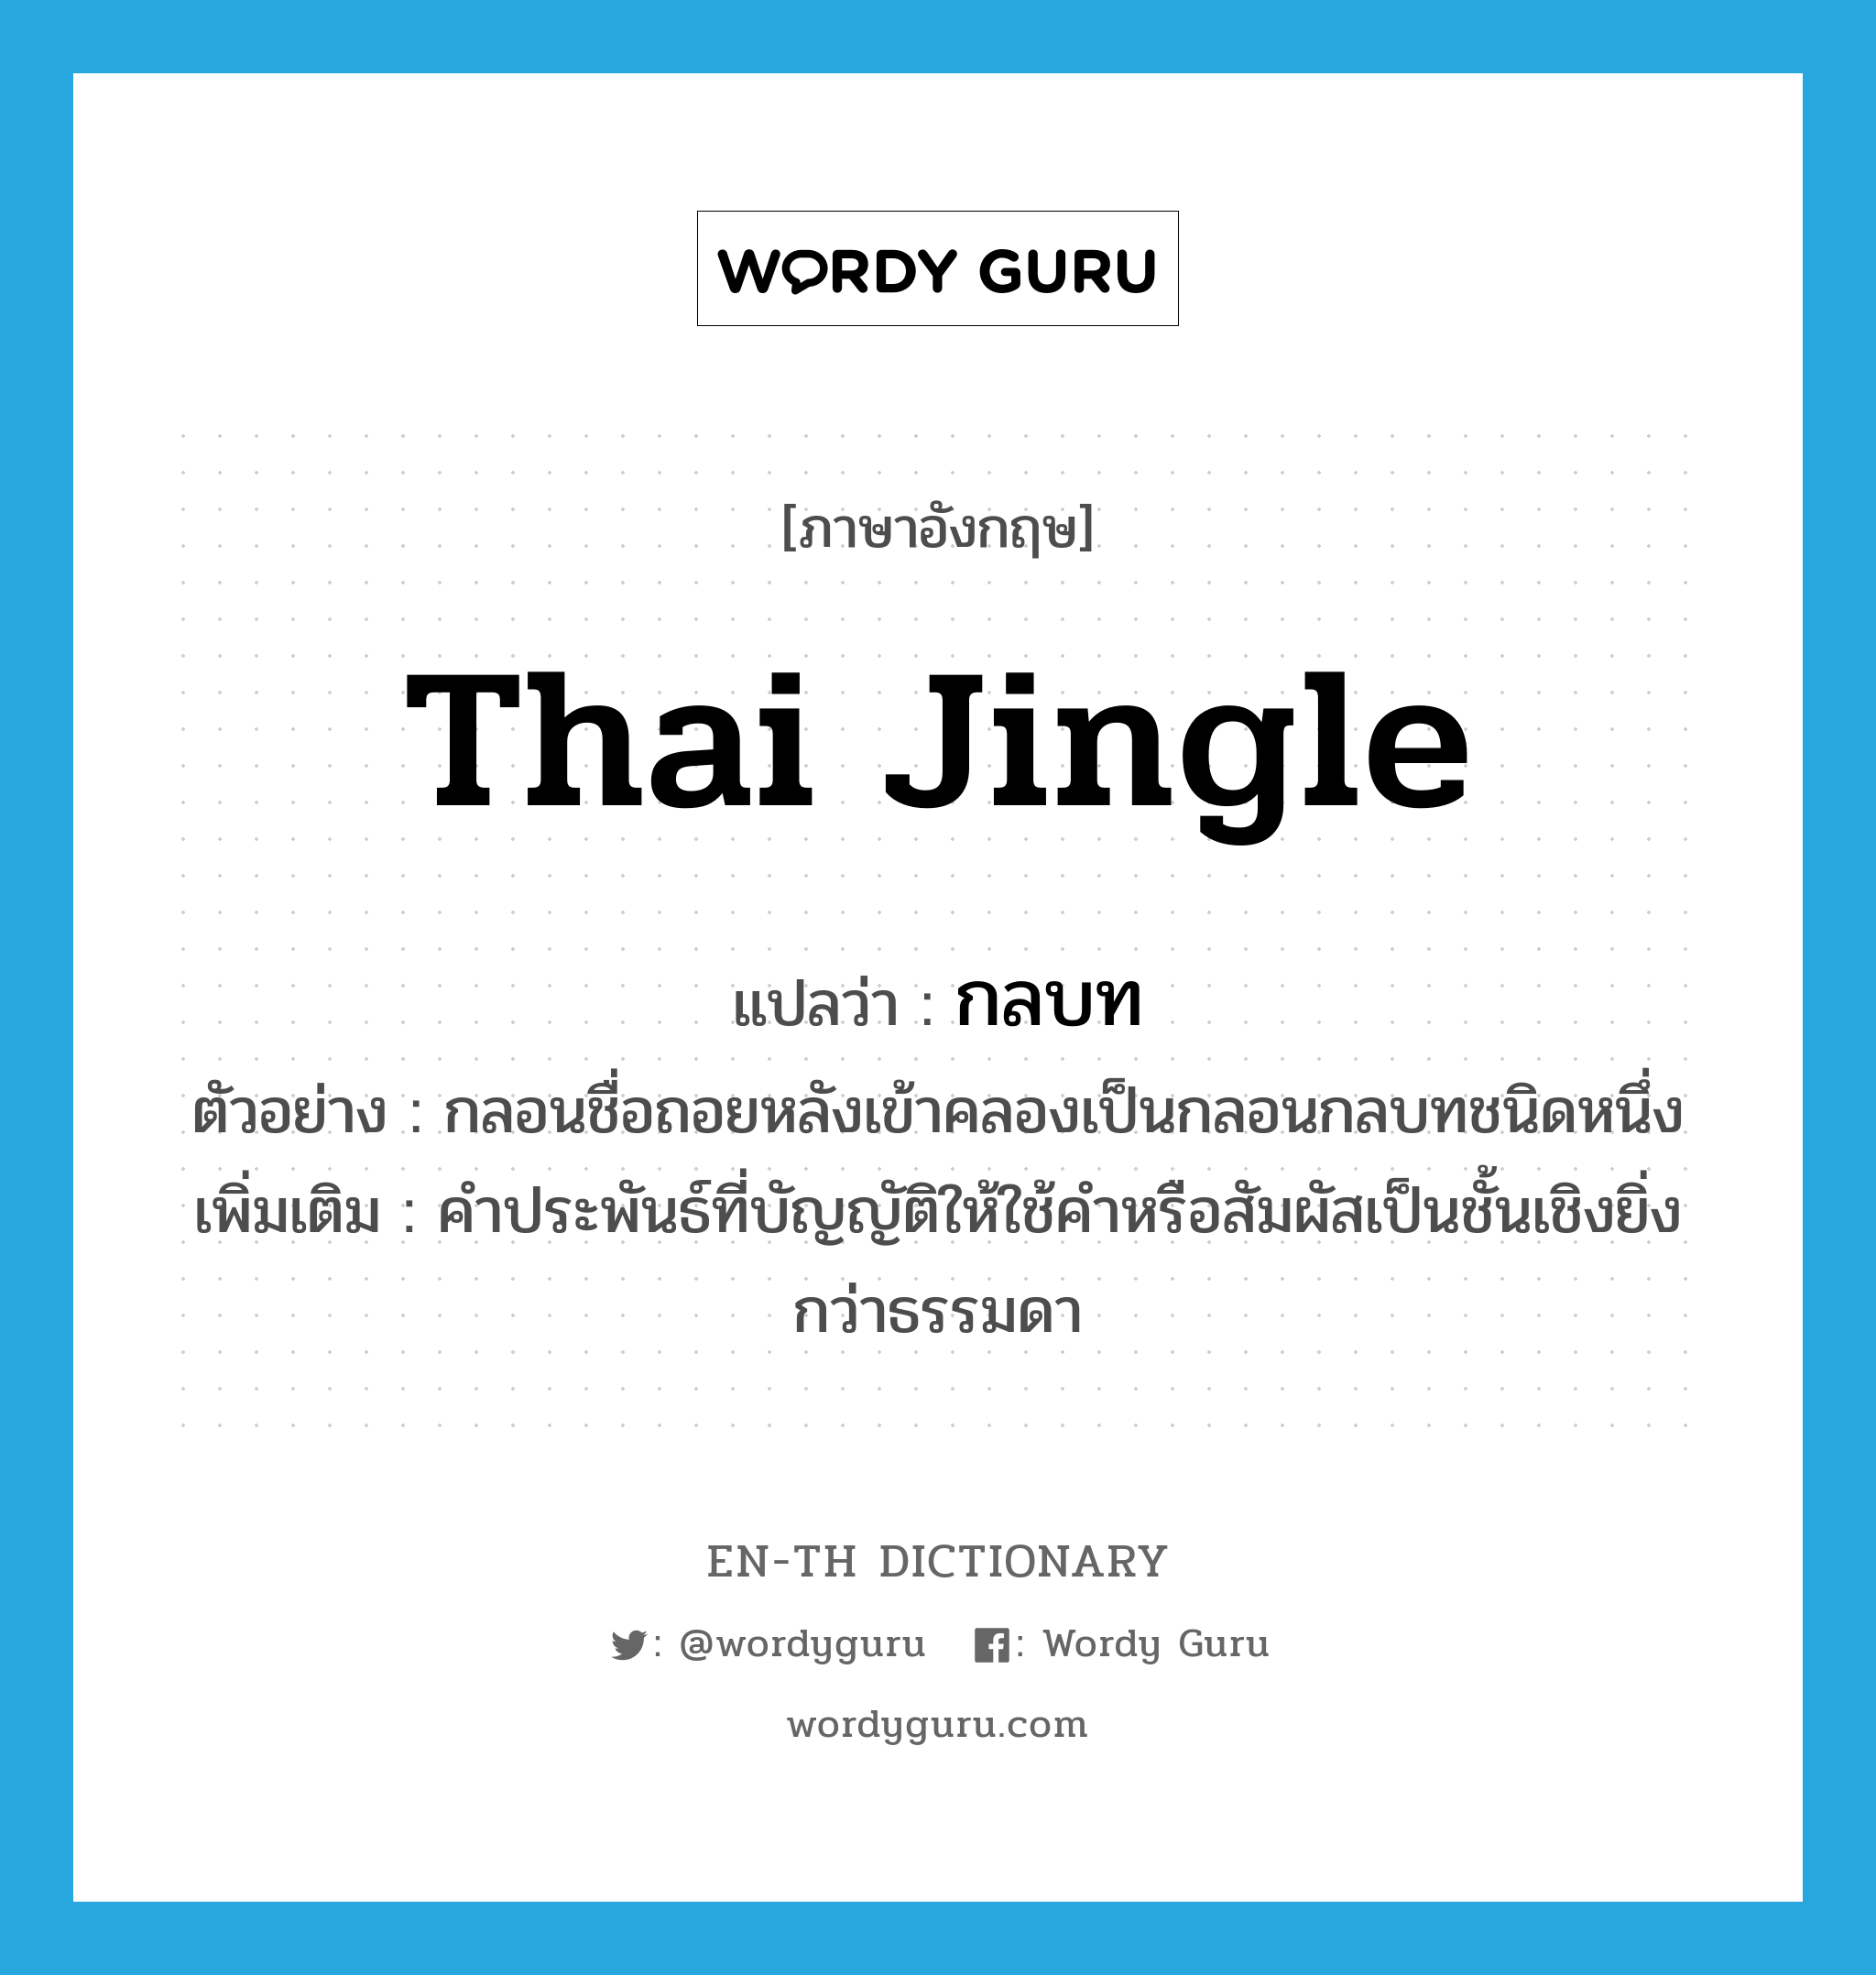 Thai jingle แปลว่า?, คำศัพท์ภาษาอังกฤษ Thai jingle แปลว่า กลบท ประเภท N ตัวอย่าง กลอนชื่อถอยหลังเข้าคลองเป็นกลอนกลบทชนิดหนึ่ง เพิ่มเติม คำประพันธ์ที่บัญญัติให้ใช้คำหรือสัมผัสเป็นชั้นเชิงยิ่งกว่าธรรมดา หมวด N